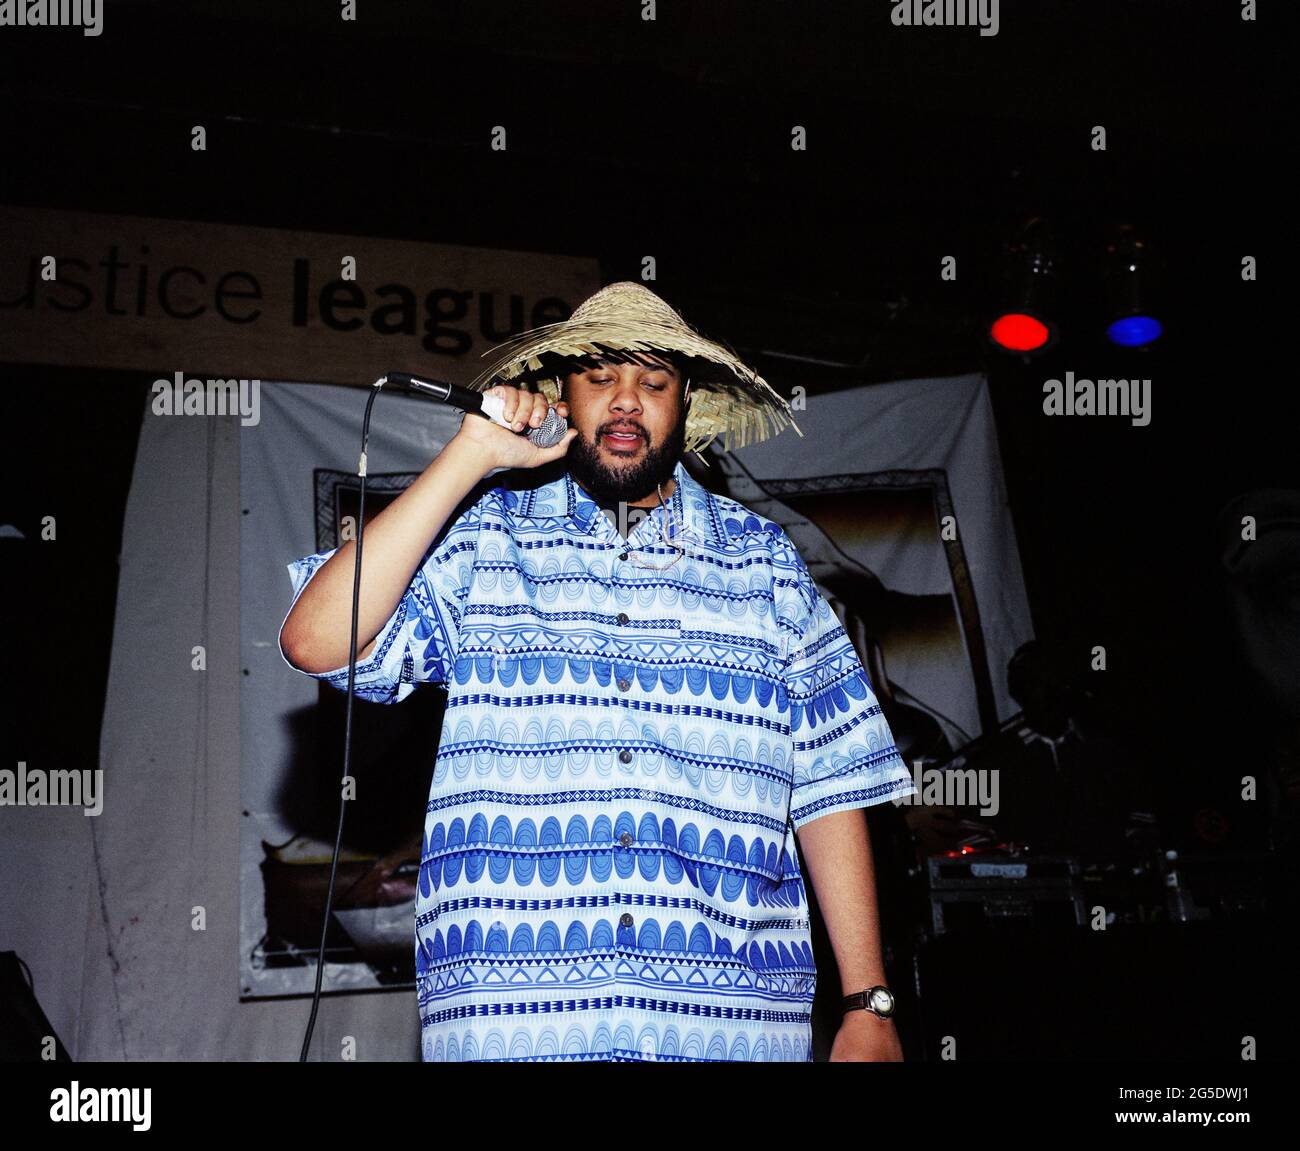 Don de Gab (Timothy Jerome Parker) du duo de hip-hop de la région de la baie Blackalicious en représentation à la Justice League, San Francisco, Californie, 1999. Banque D'Images